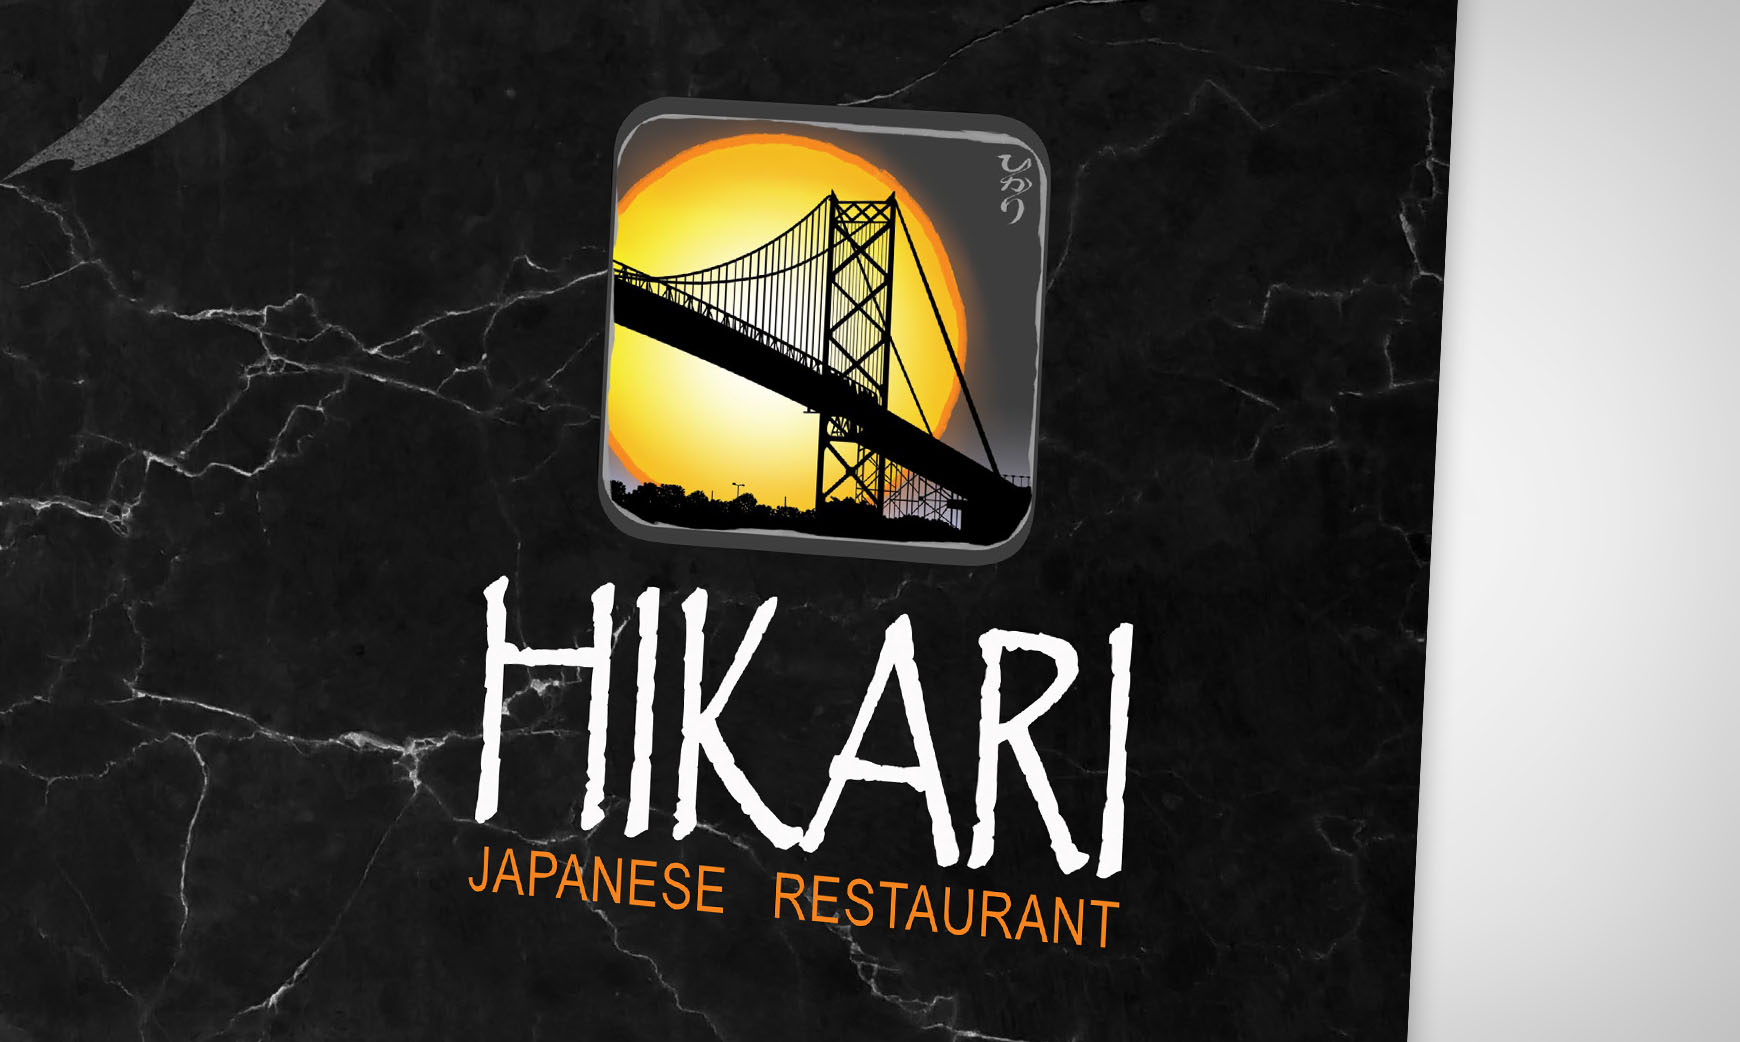 Hikari Rebranding